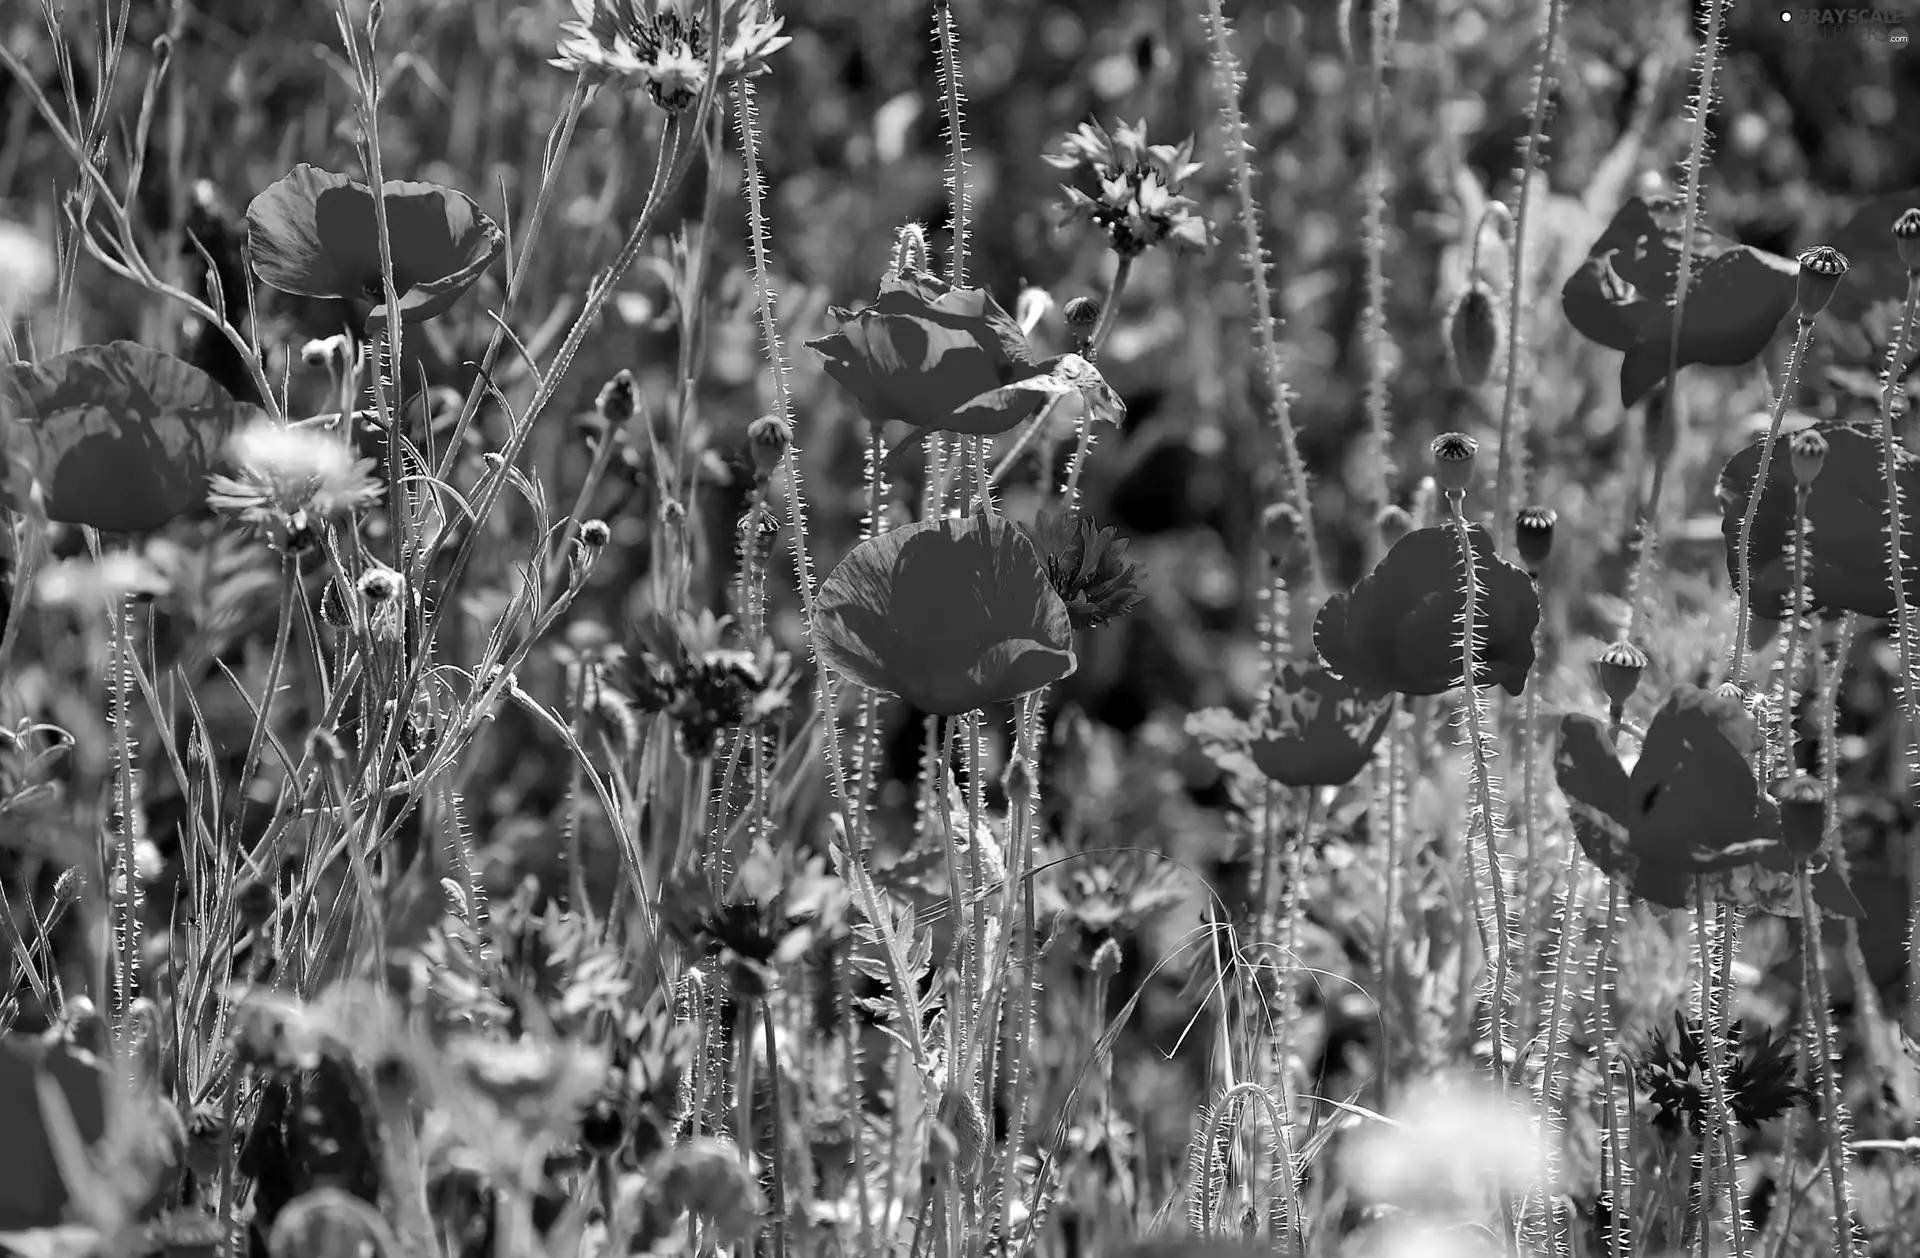 Meadow, cornflowers, papavers